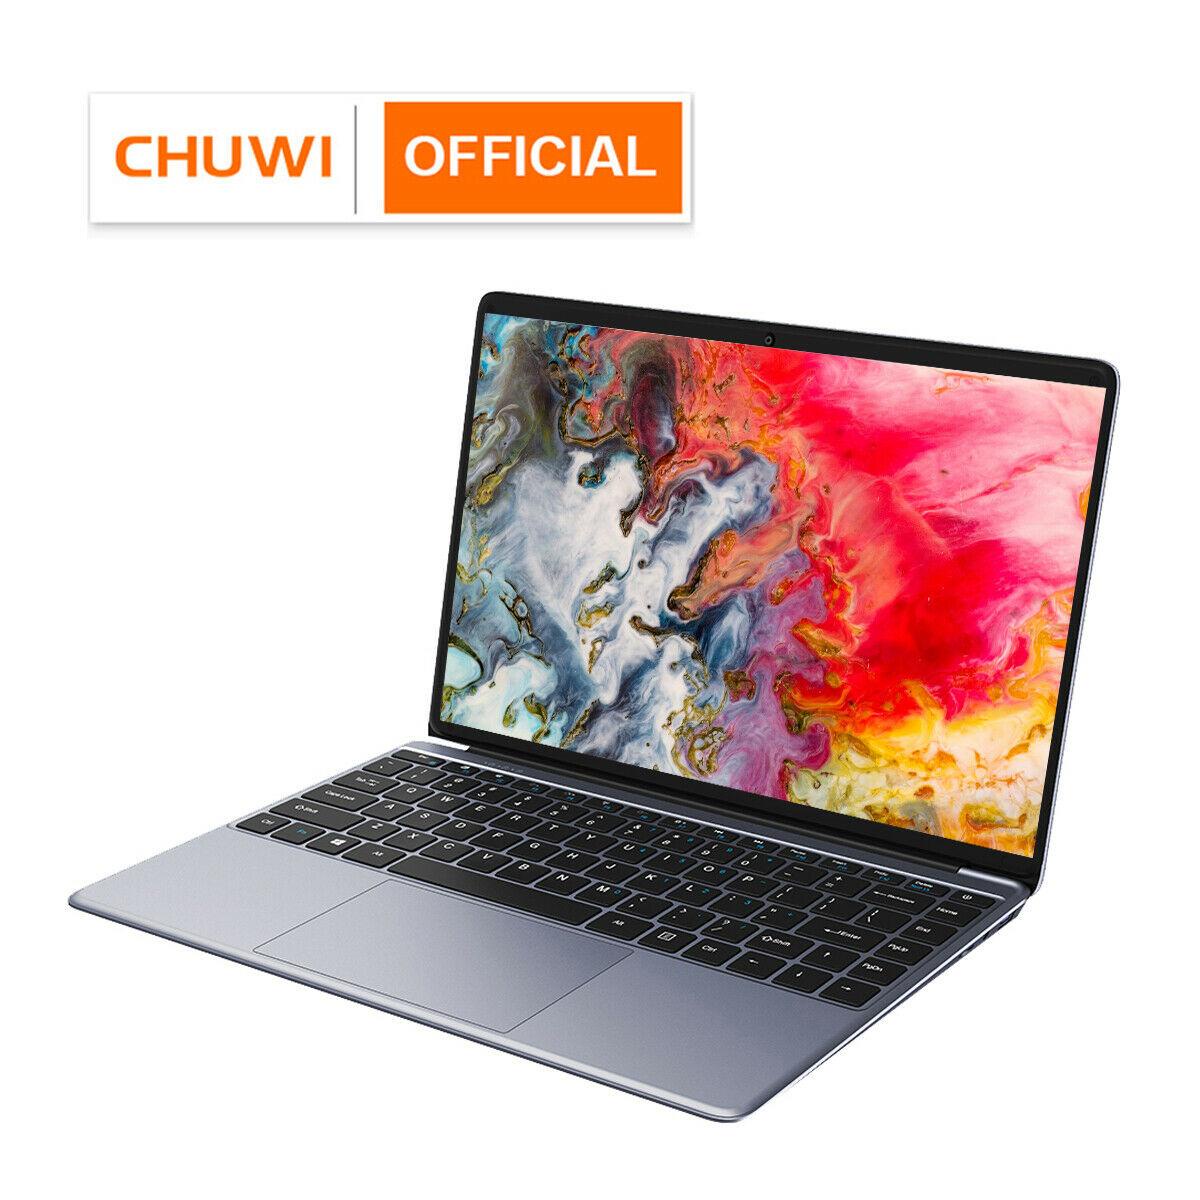 CHUWI HeroBook Pro 14.1" 1920x1080 Resolution Intel Celeron N4020 Dual Core Windows 10 OS 8GB RAM 256GB SSD Laptop with Mini HD